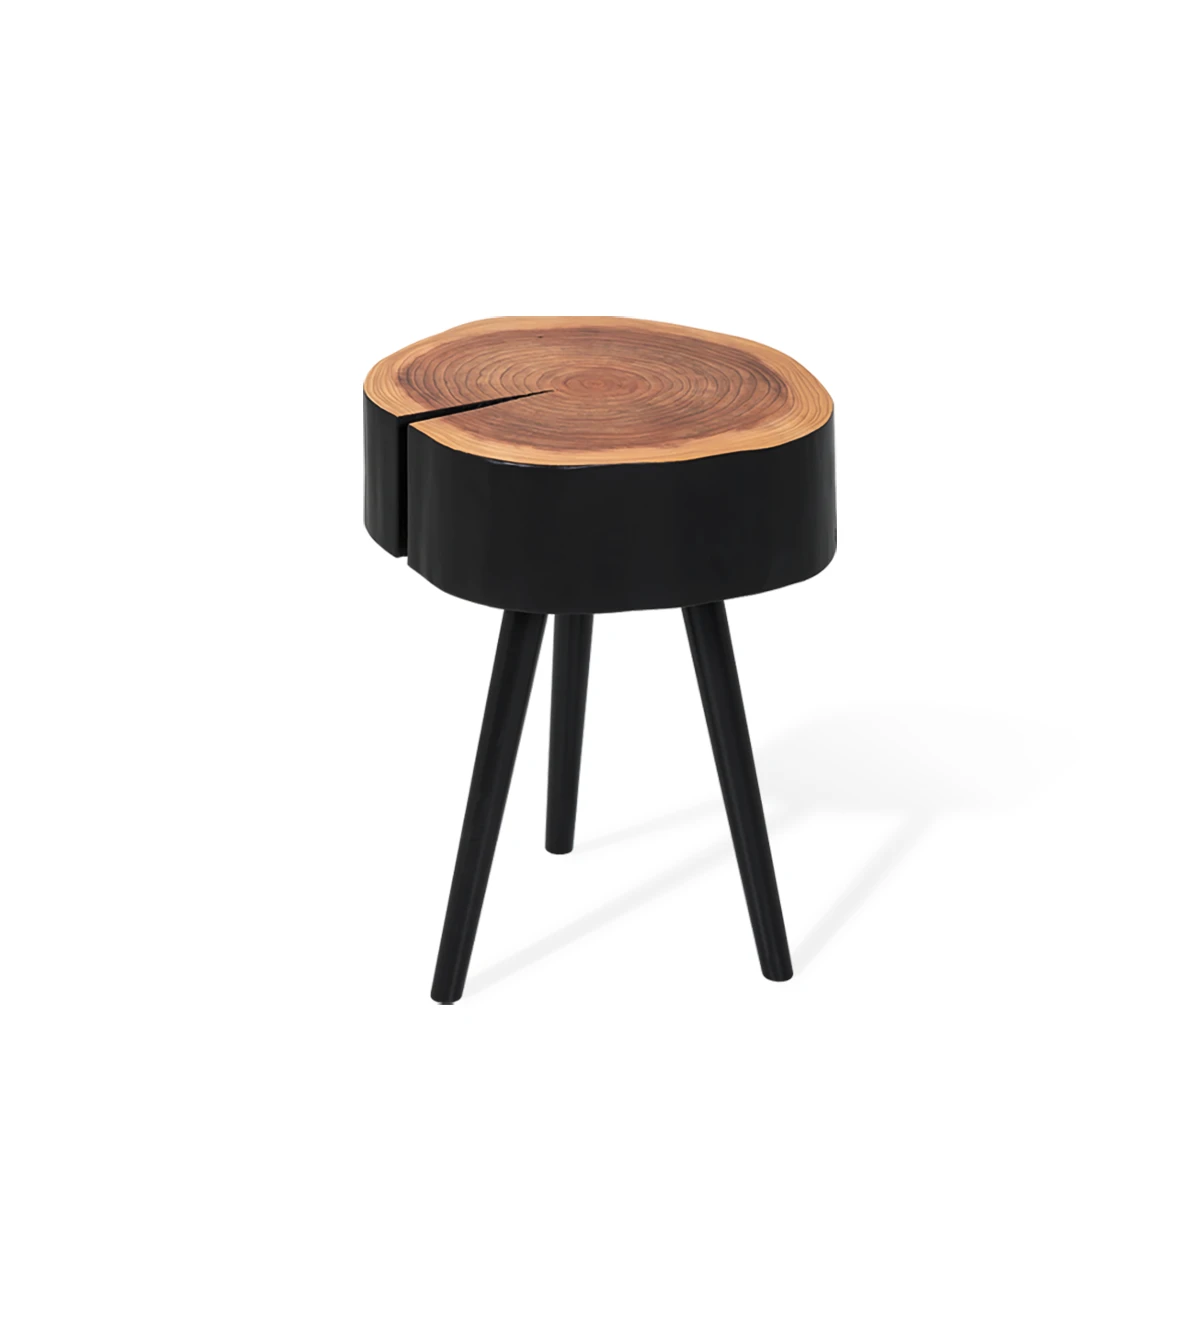 Mesa de apoio tronco em madeira natural de criptoméria lacada a negro, pés lacados a negro, Ø 35 a 45 cm.